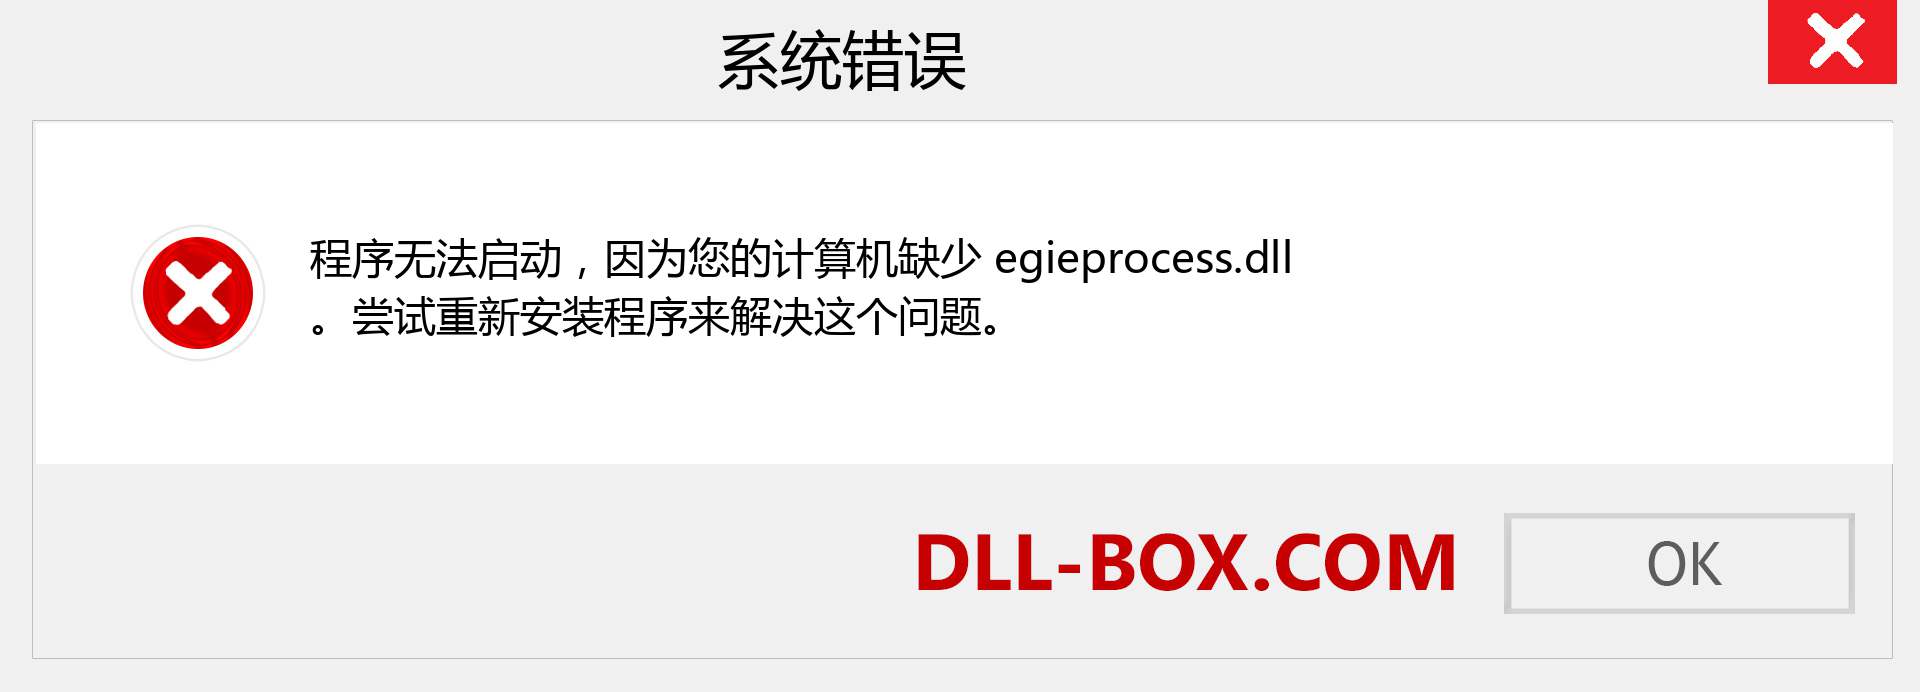 egieprocess.dll 文件丢失？。 适用于 Windows 7、8、10 的下载 - 修复 Windows、照片、图像上的 egieprocess dll 丢失错误